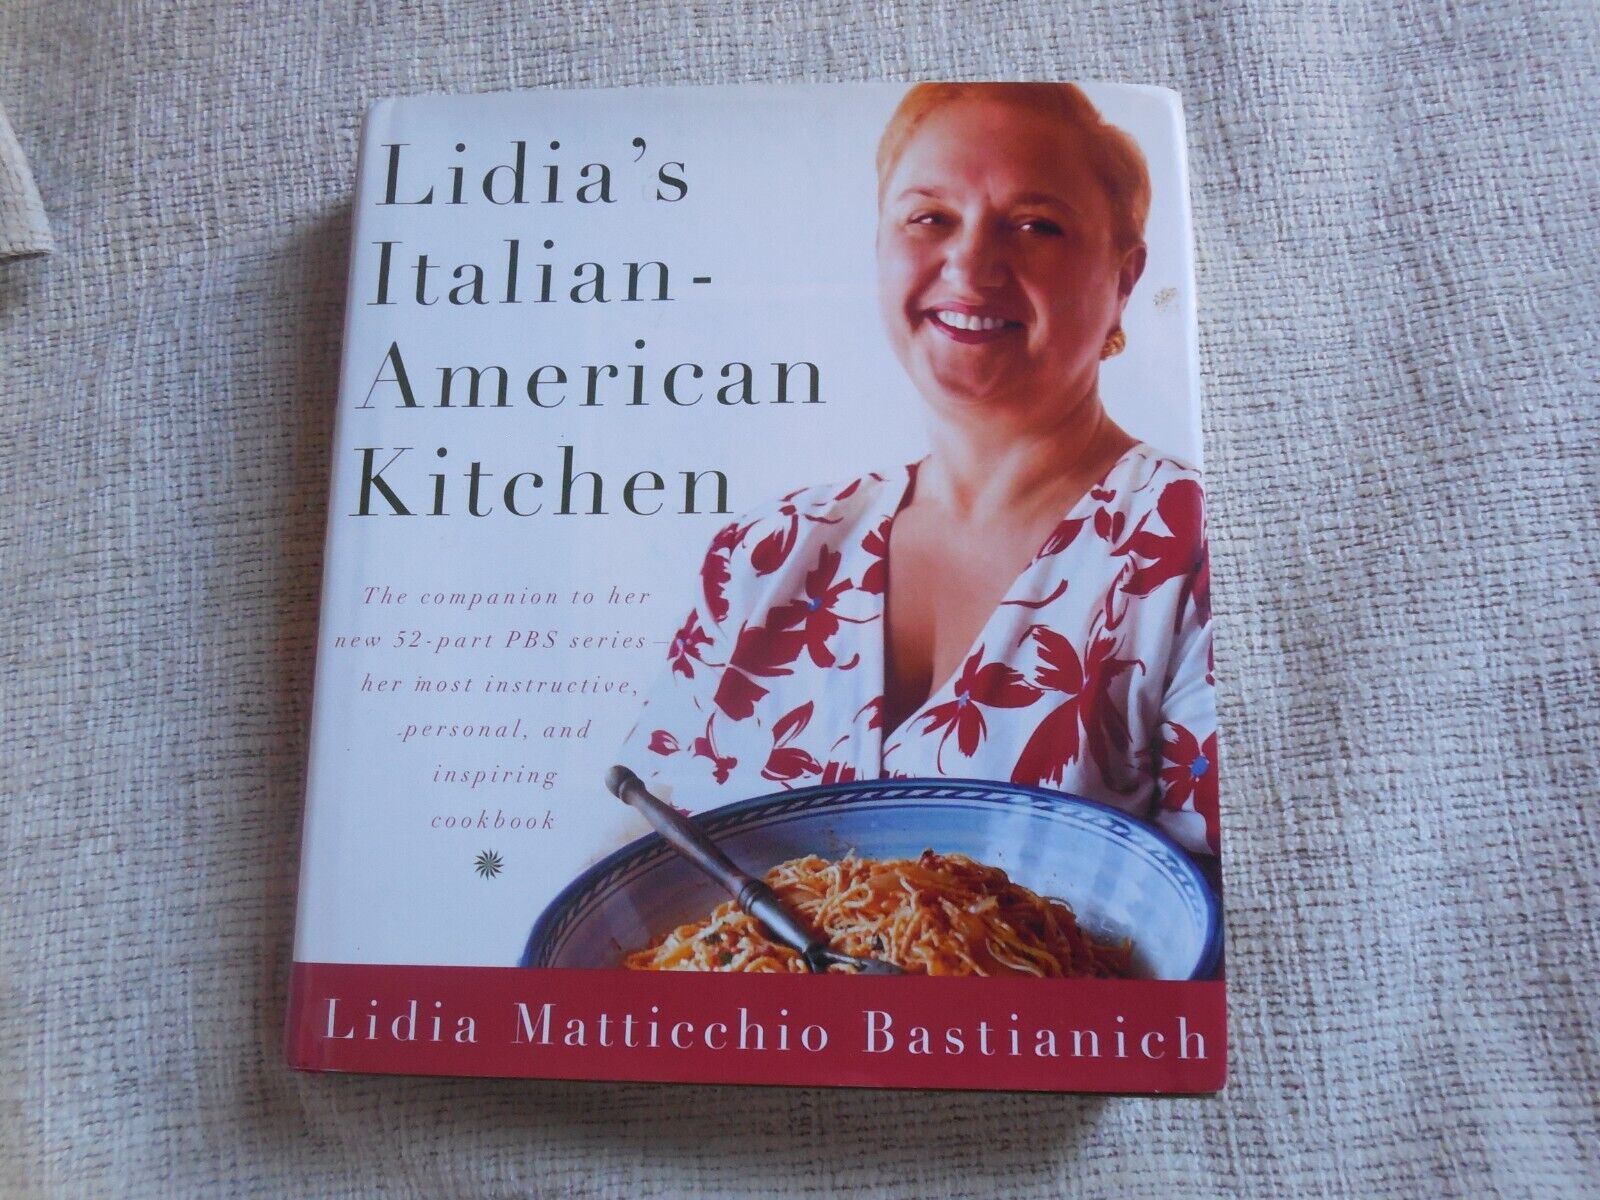 Primary image for Lidia's Italian American Kitchen, Lidia Maticchio Bastianich, 2002, HCDJ